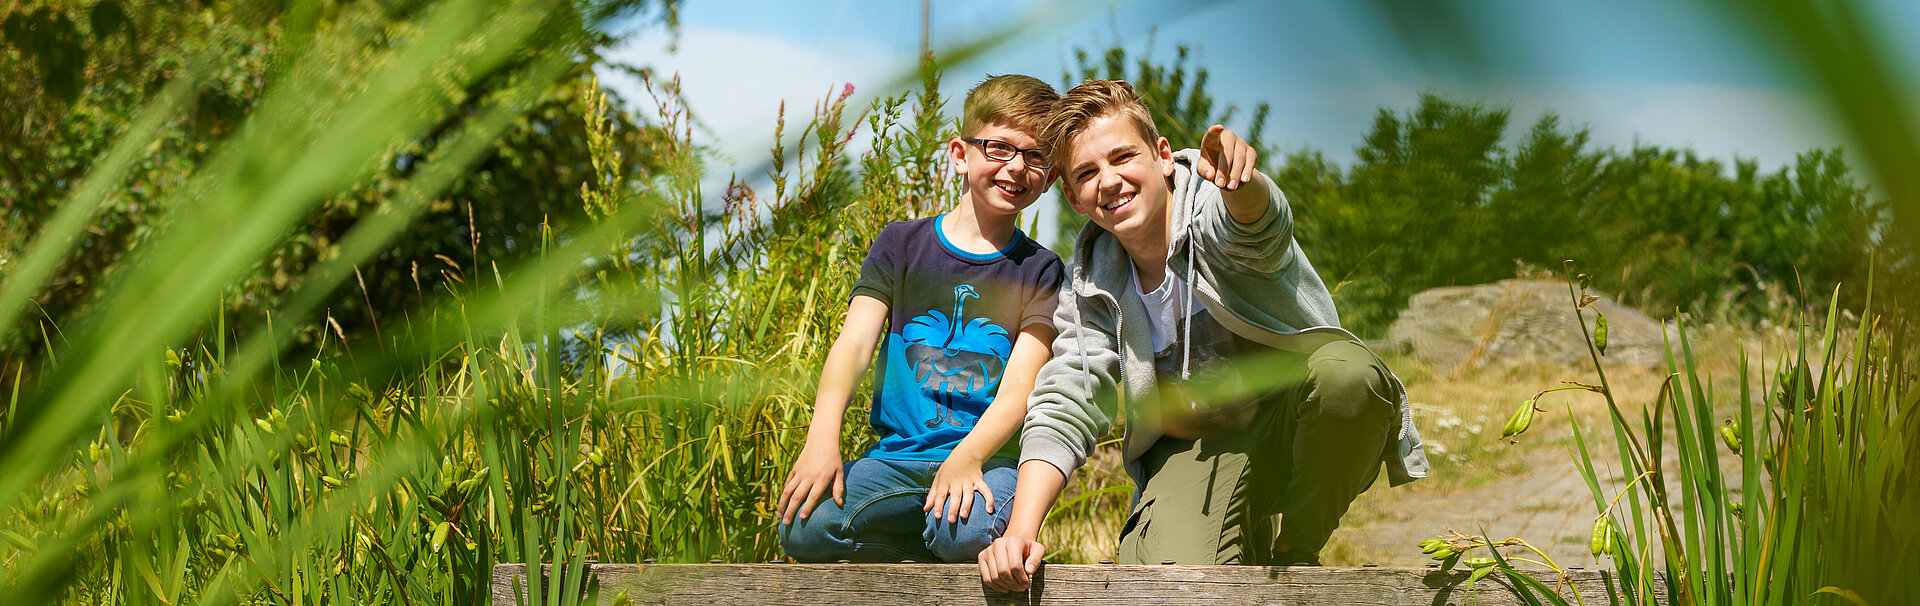 Zwei Jungs sitzen auf Holzbrücke und schauen ins Grüne